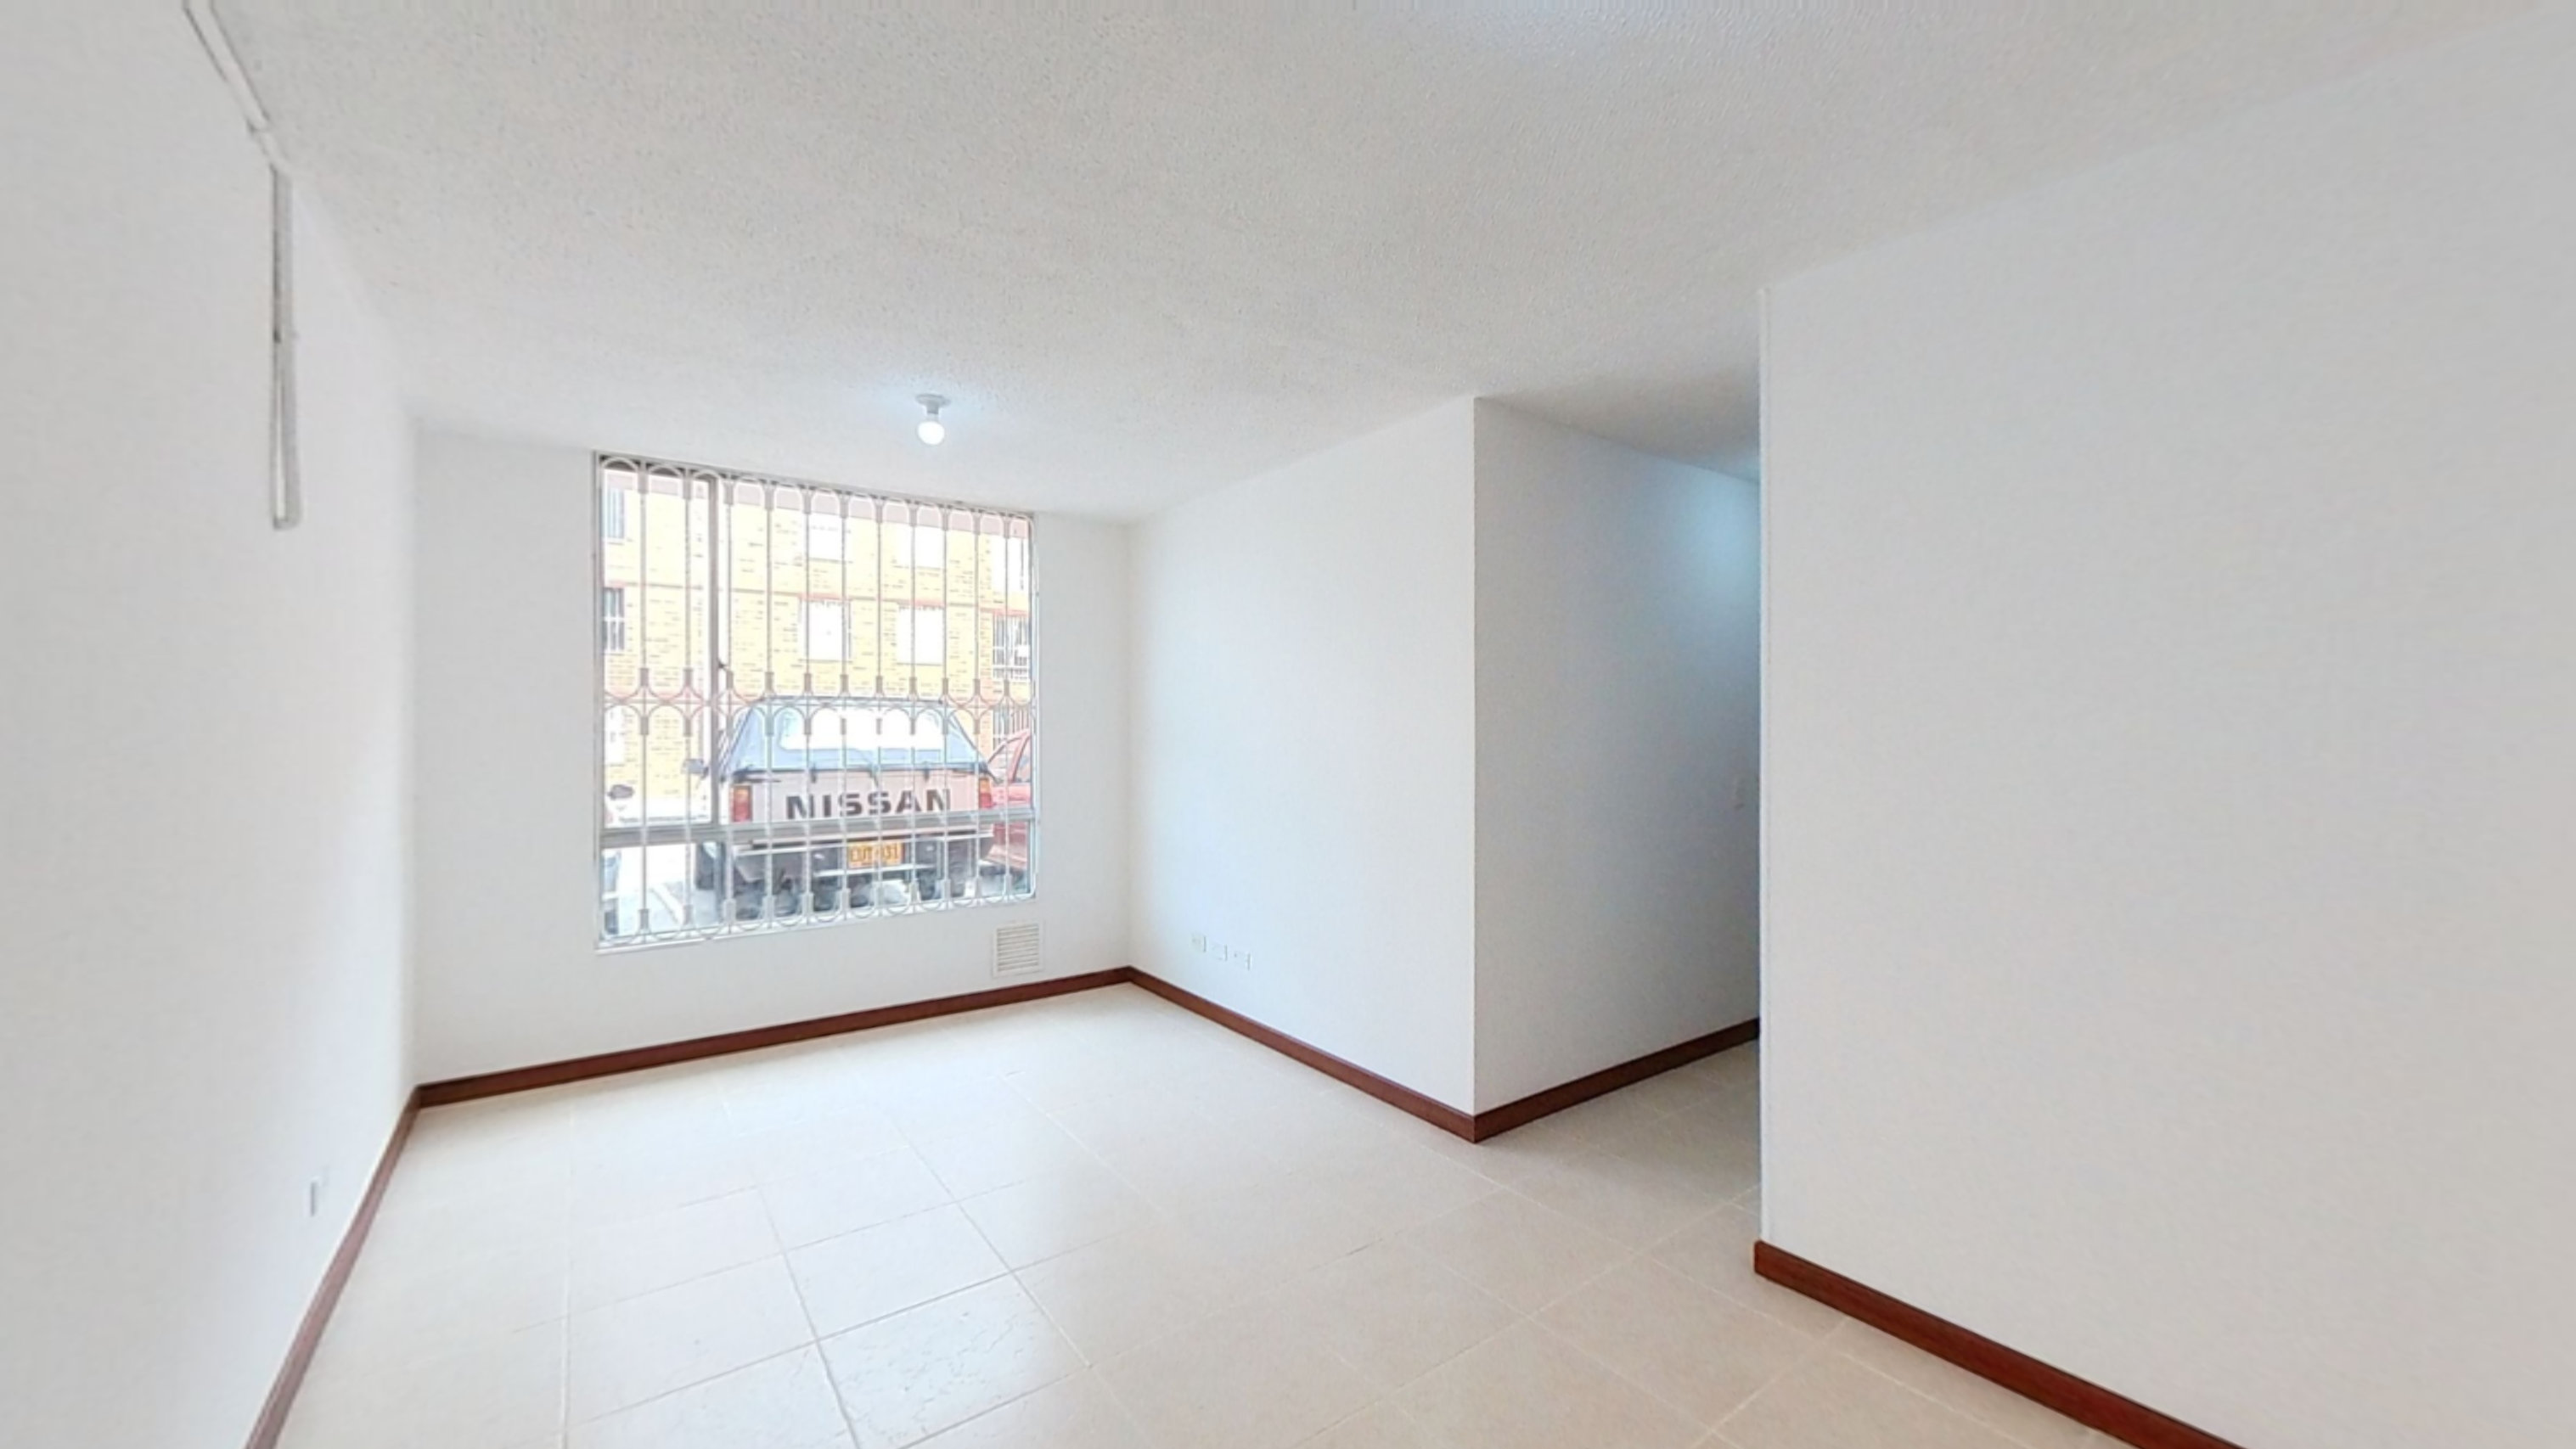 Venta de apartamento BogotÃ¡ Torres de Nueva Castilla